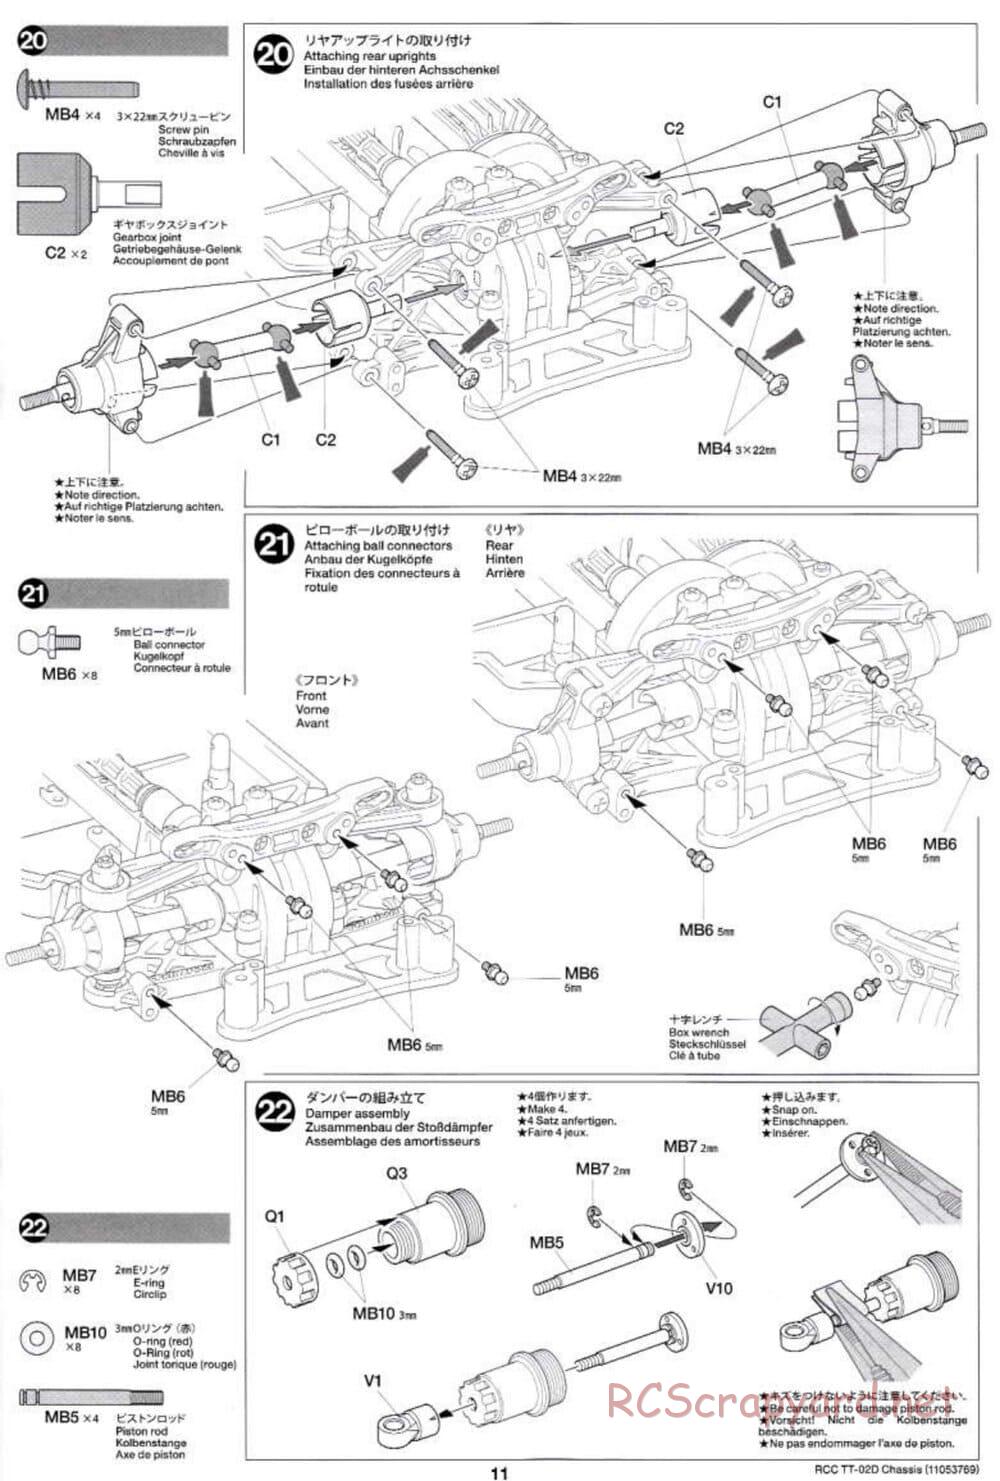 Tamiya - TT-02D Chassis - Manual - Page 11